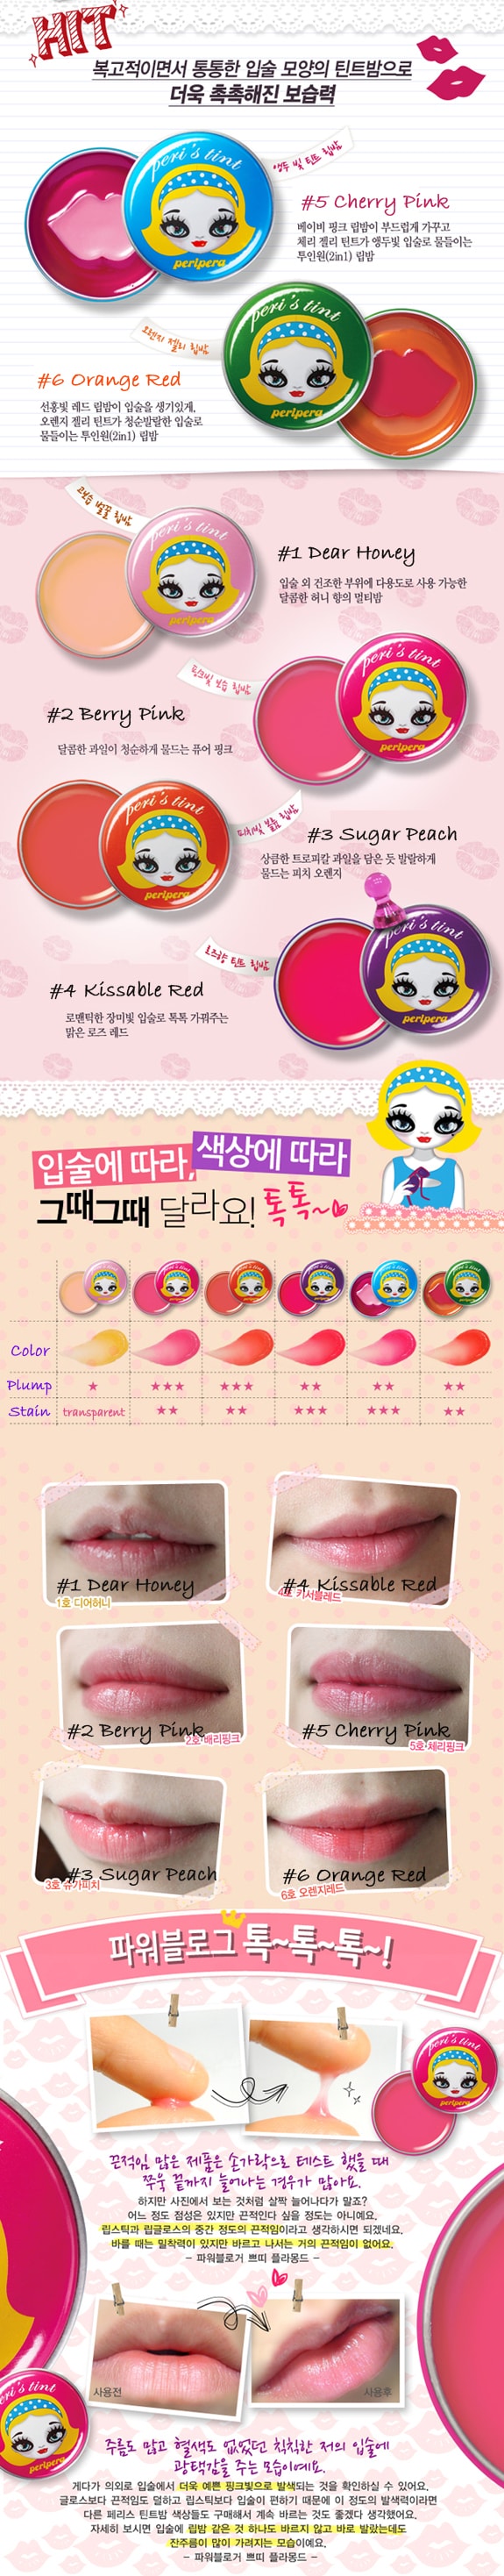 韩国 PERIPERA Peri's tint 润唇膏 #02 Berry Pink 1pc